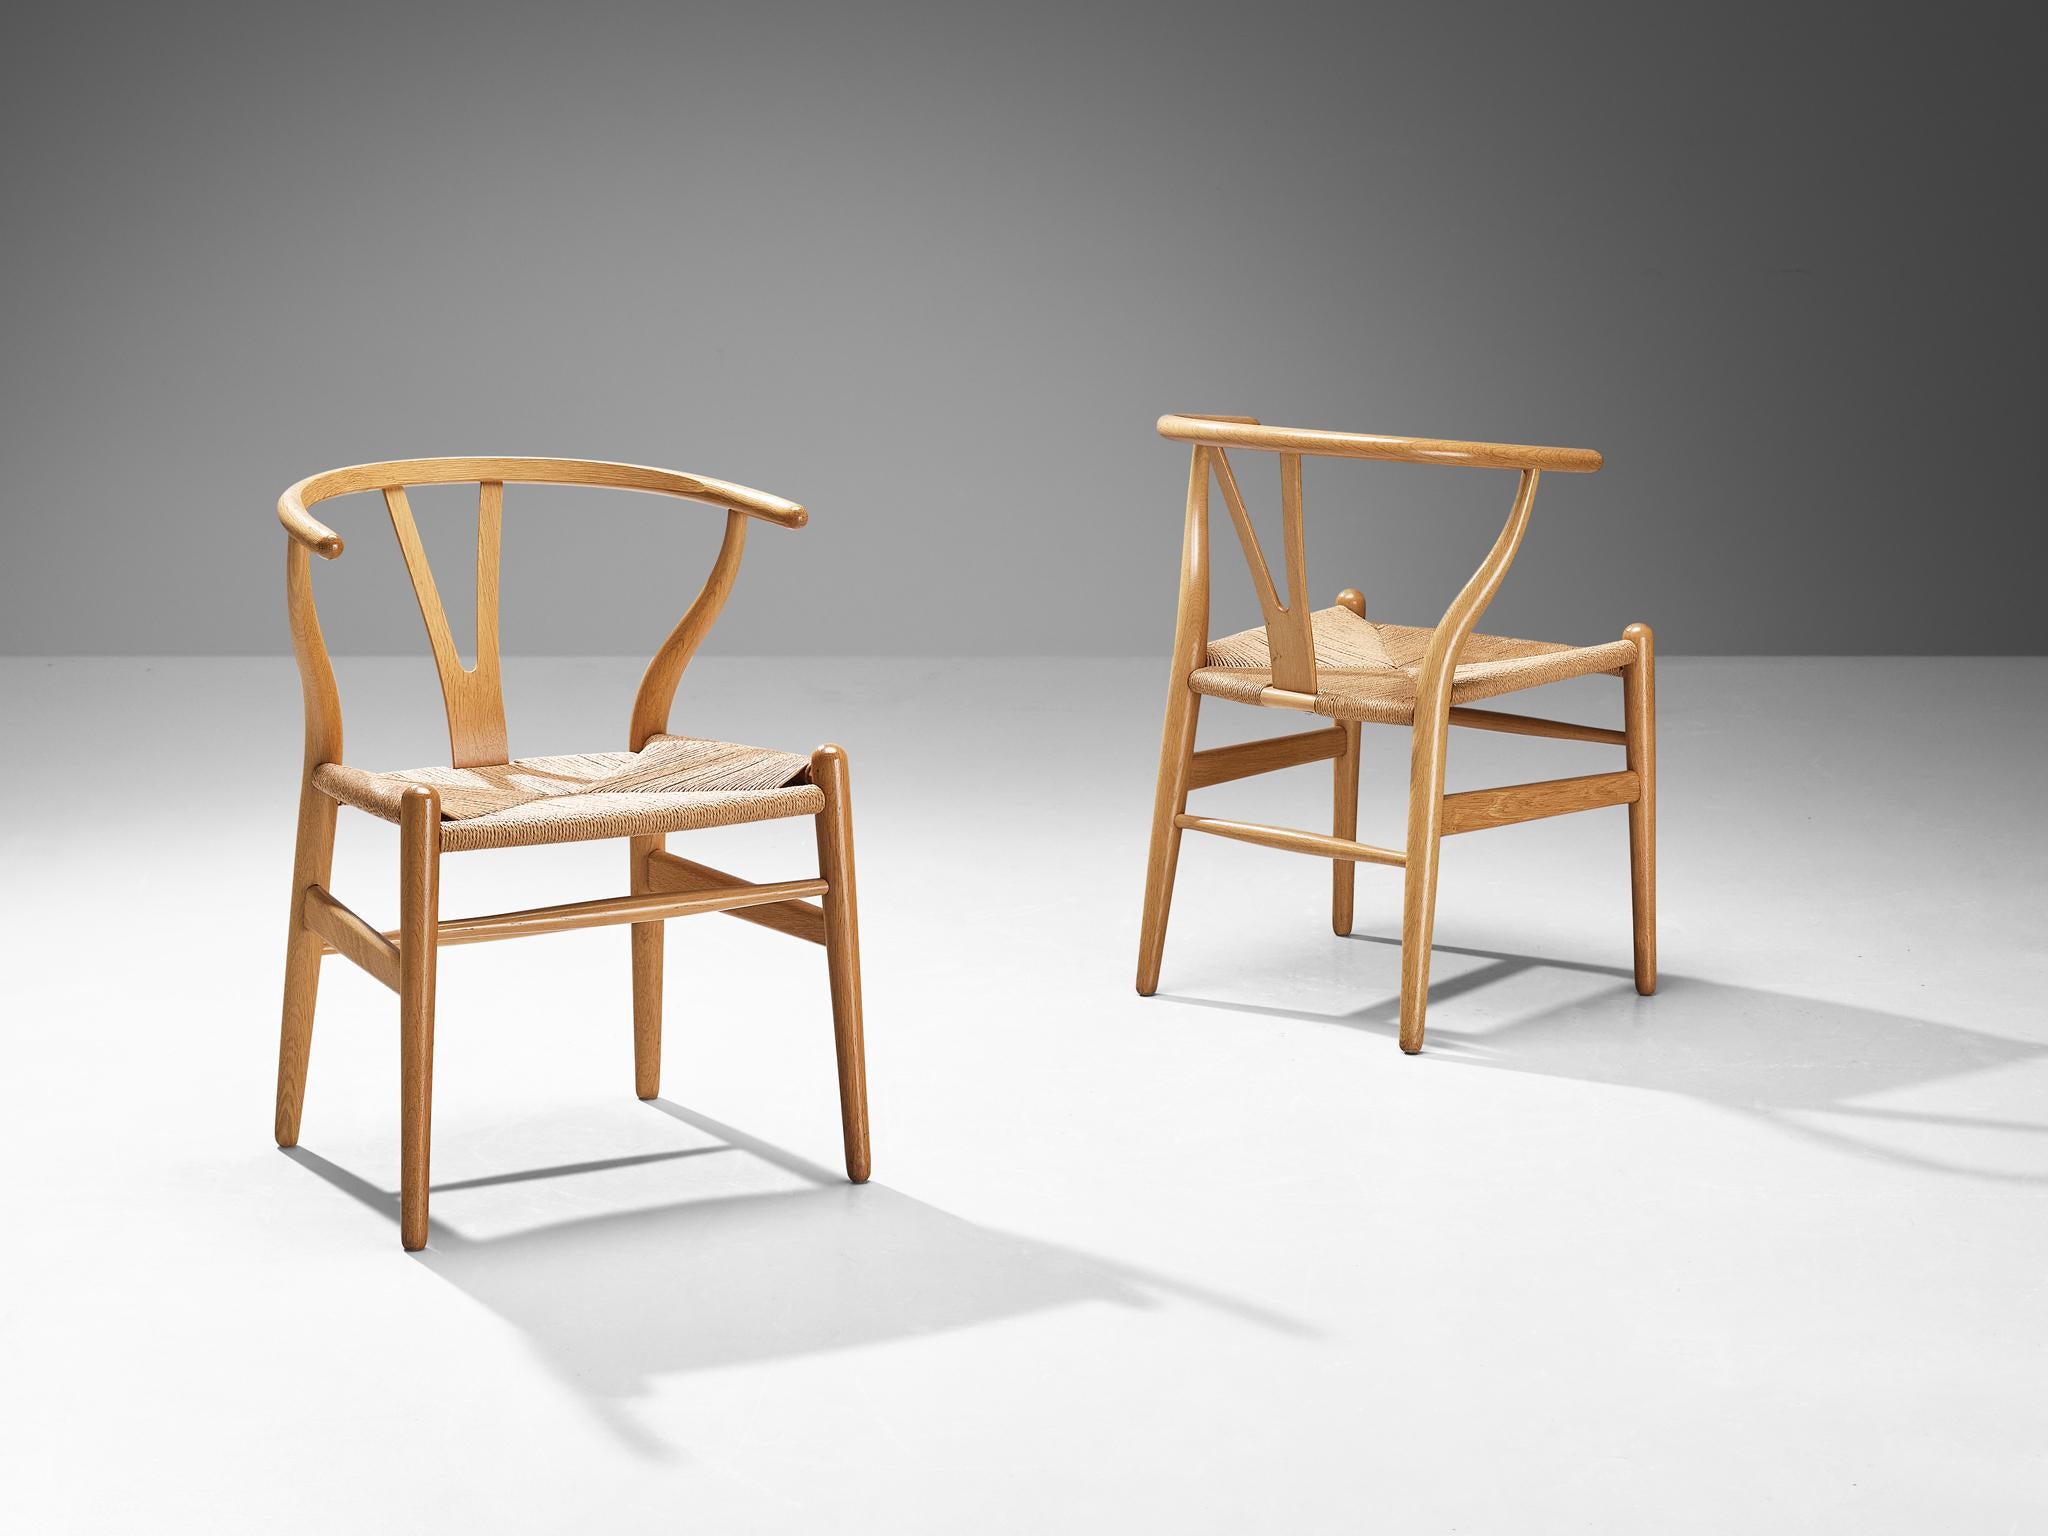 Hans J. Wegner für Carl Hansen & Søn, Paar 'Wishbone'-Stühle, Modell 'CH24', Eiche, Papierkordel, Dänemark, Entwurf 1950, Produktion danach

Der Wishbone Stuhl ist einer der bekanntesten und berühmtesten Entwürfe von Hans Wegner. Ein einfaches